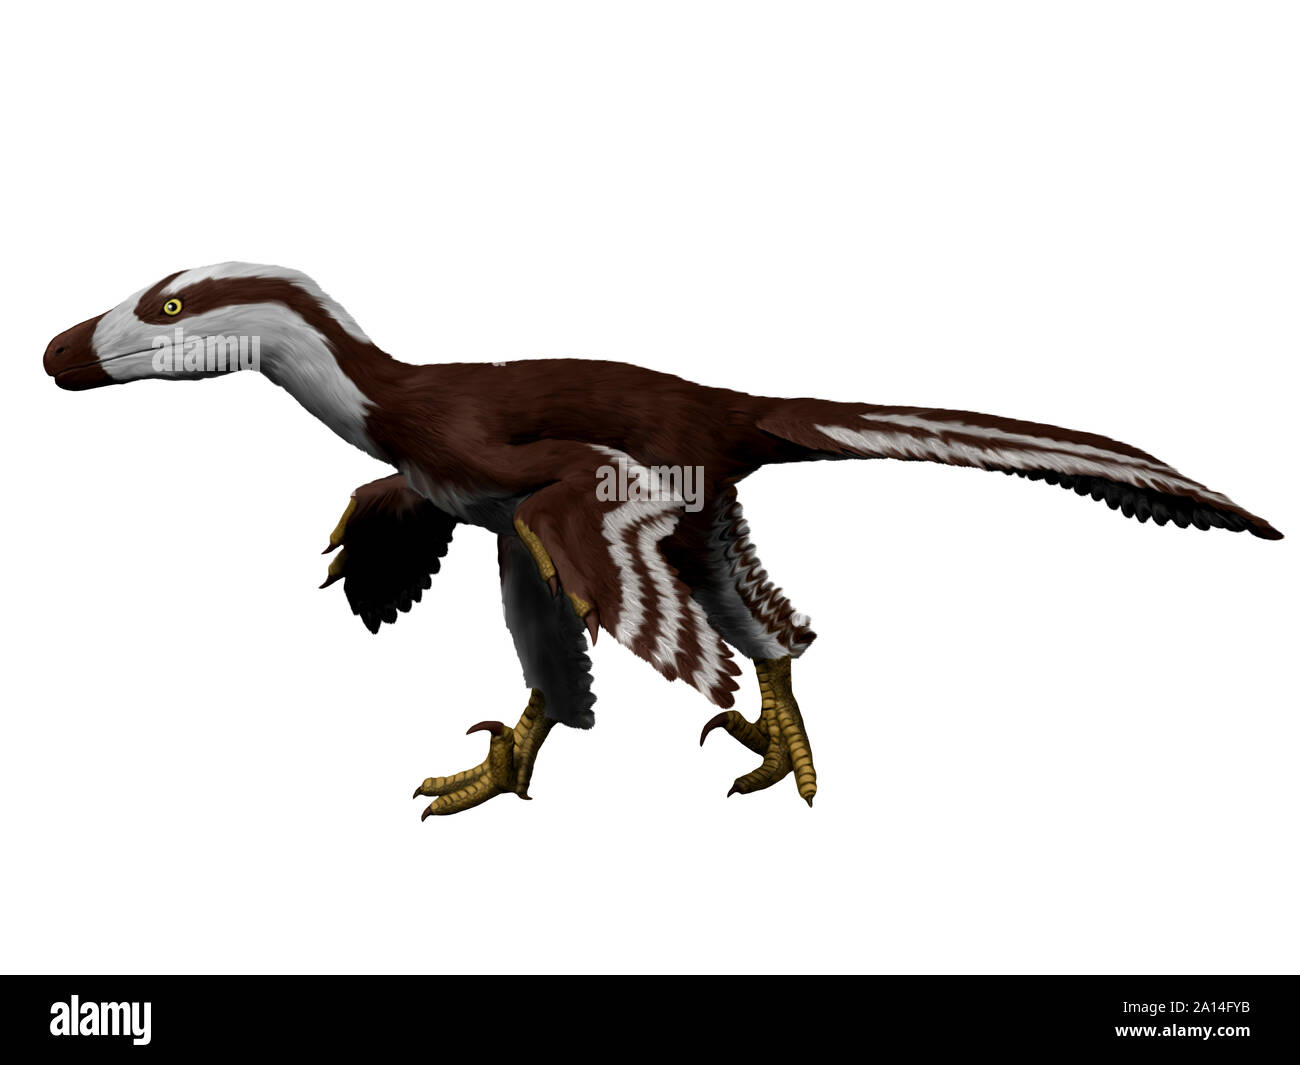 Acheroraptor temertyorum, white background. Stock Photo